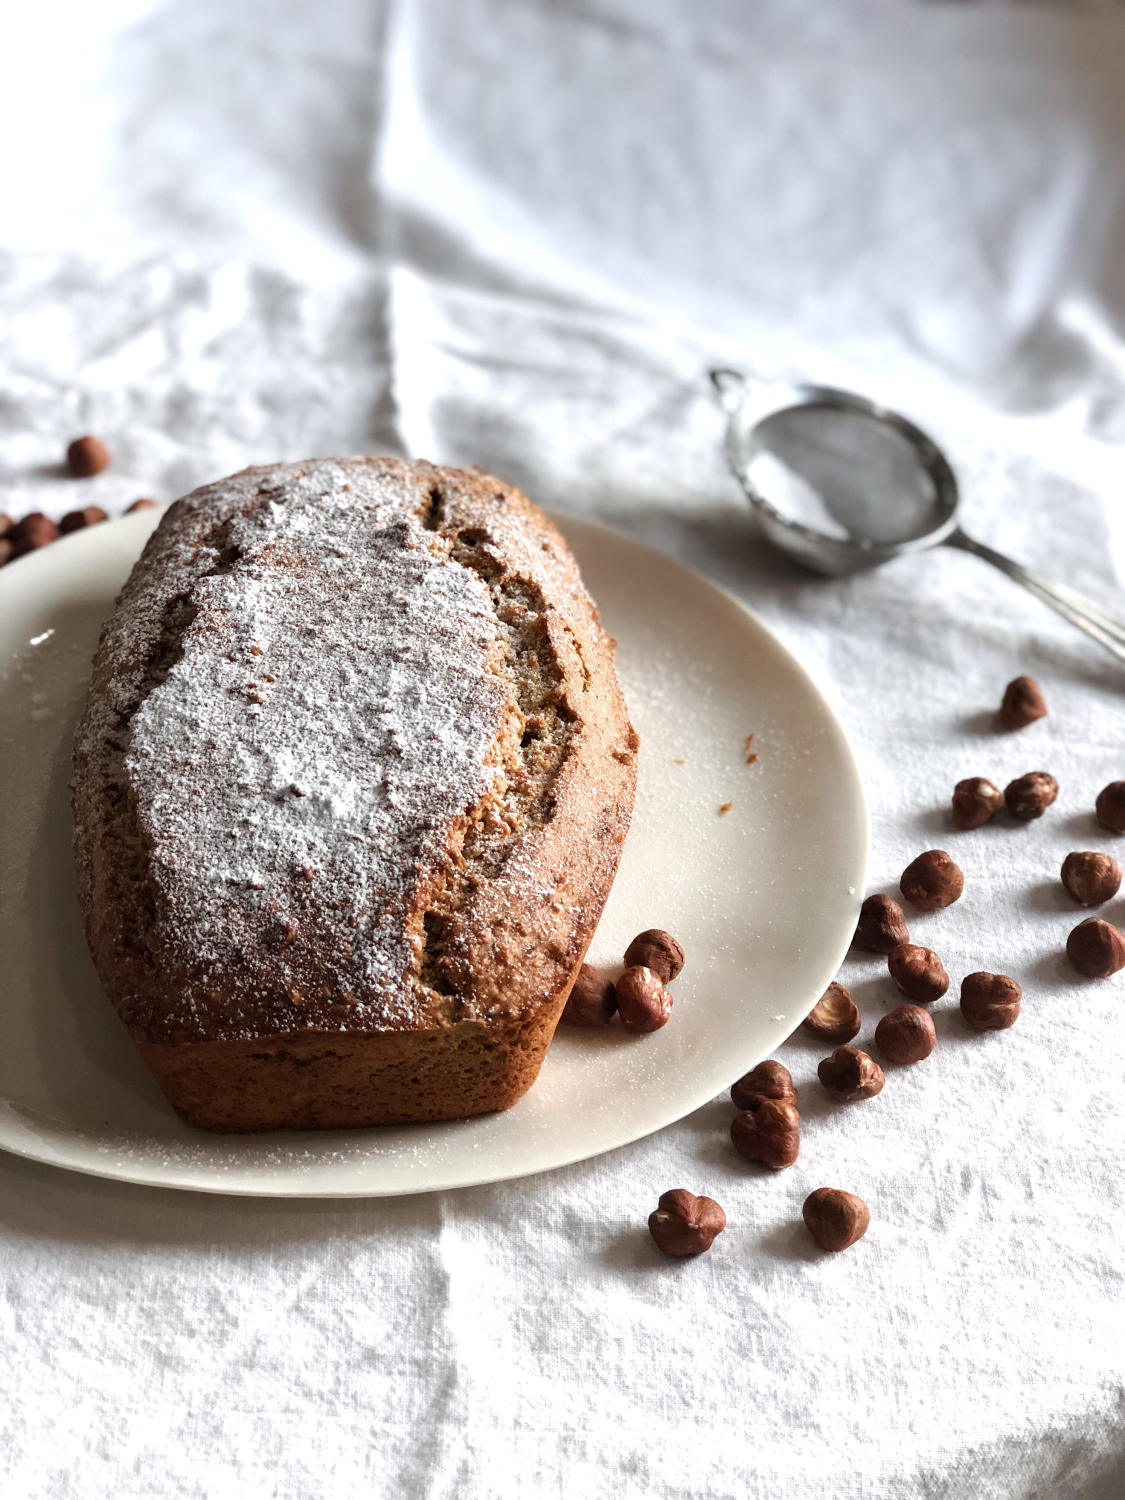 Hazelnut Loaf Recipe. A Breakfast Treat. - Feast Italy